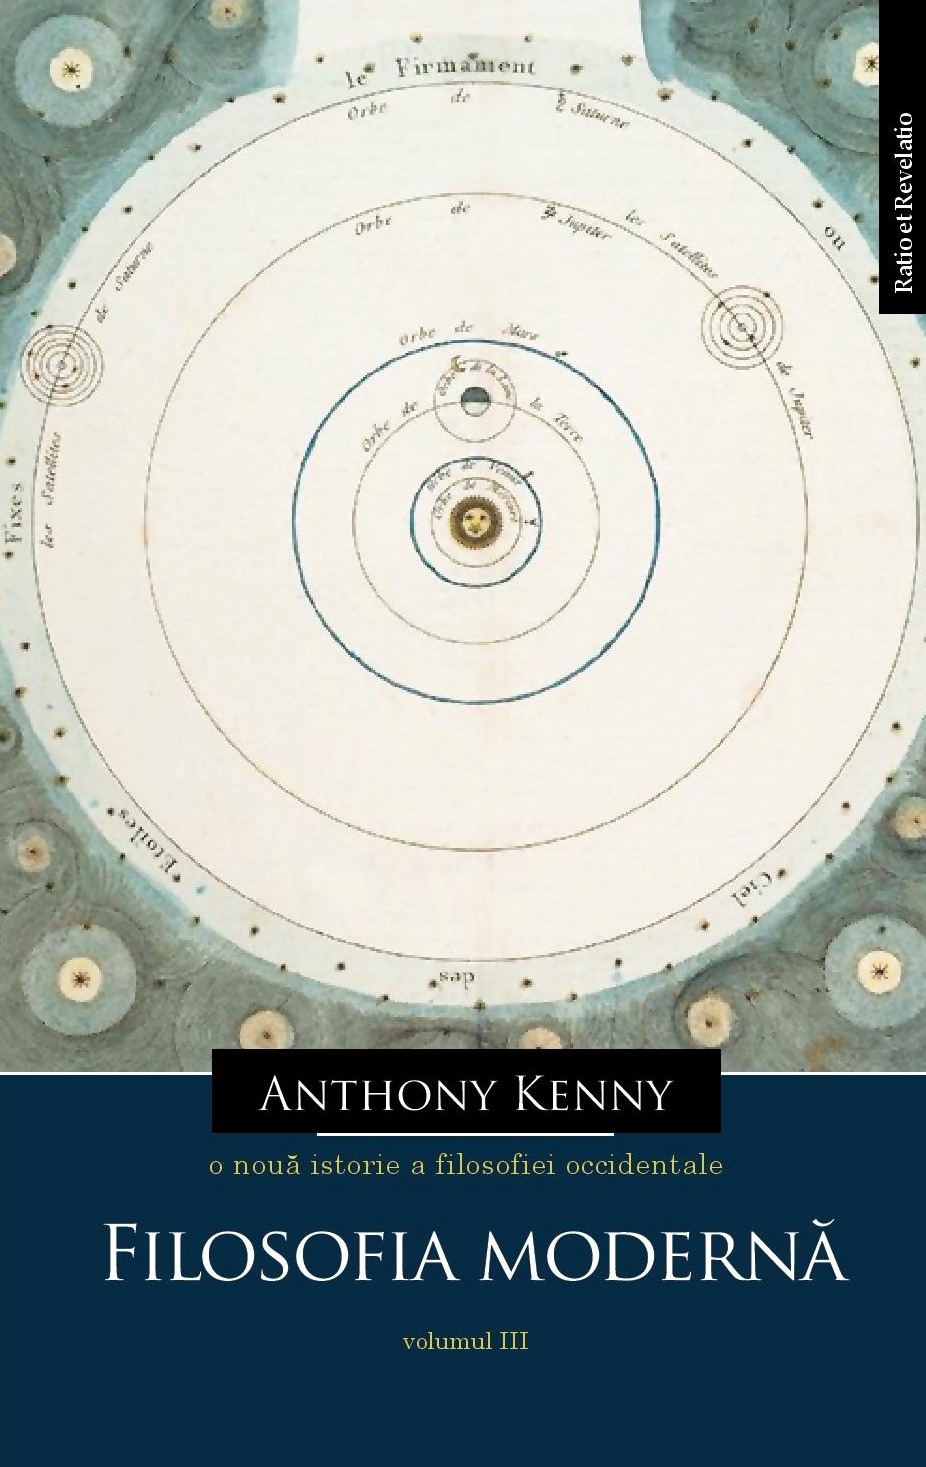 O noua istorie a filosofiei occidentale, volumul III | Anthony Kenny carturesti.ro